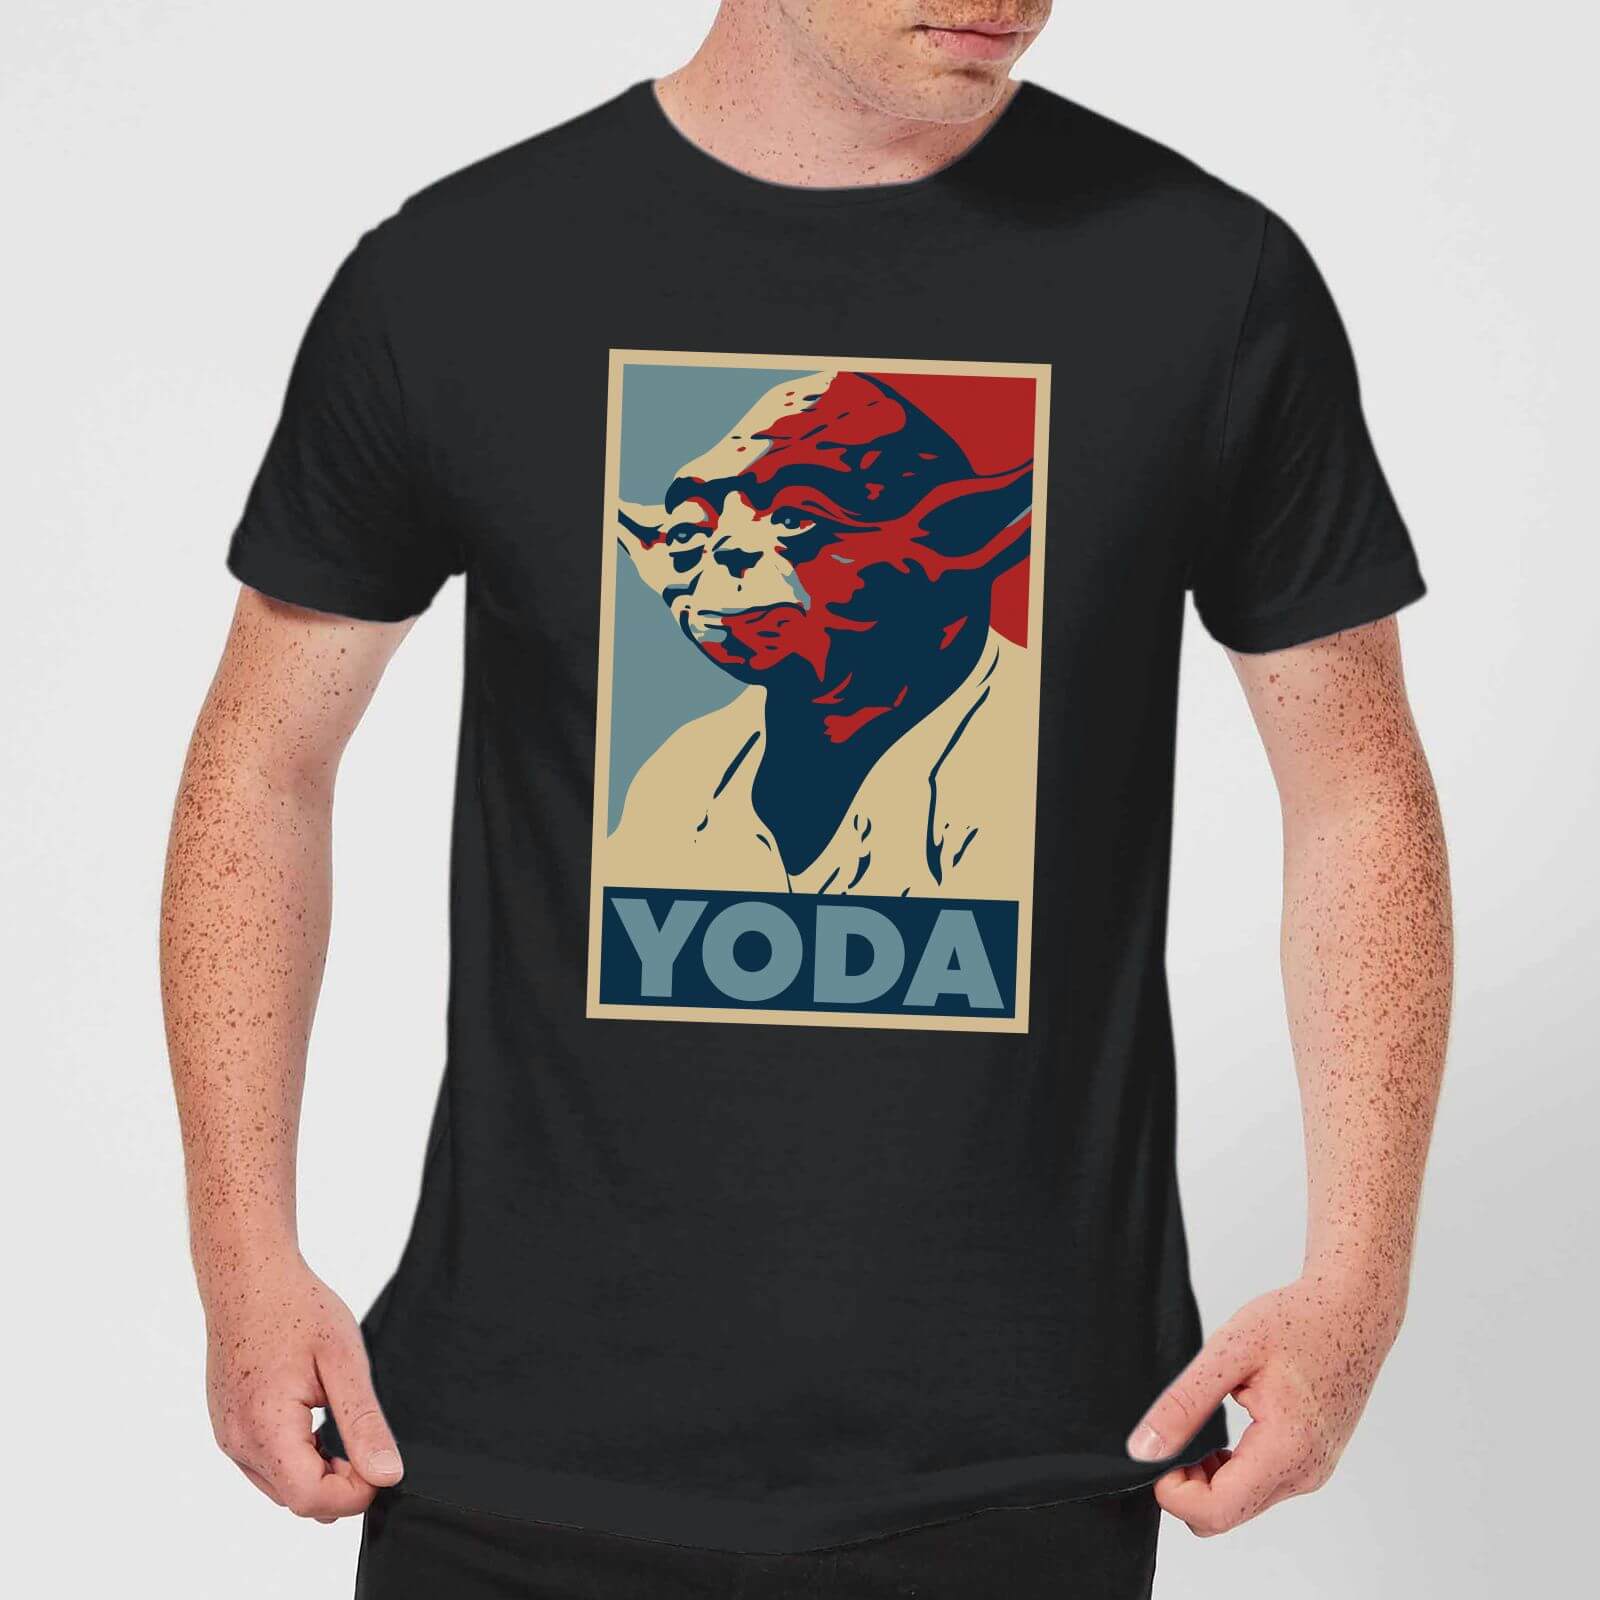 yoda t shirt